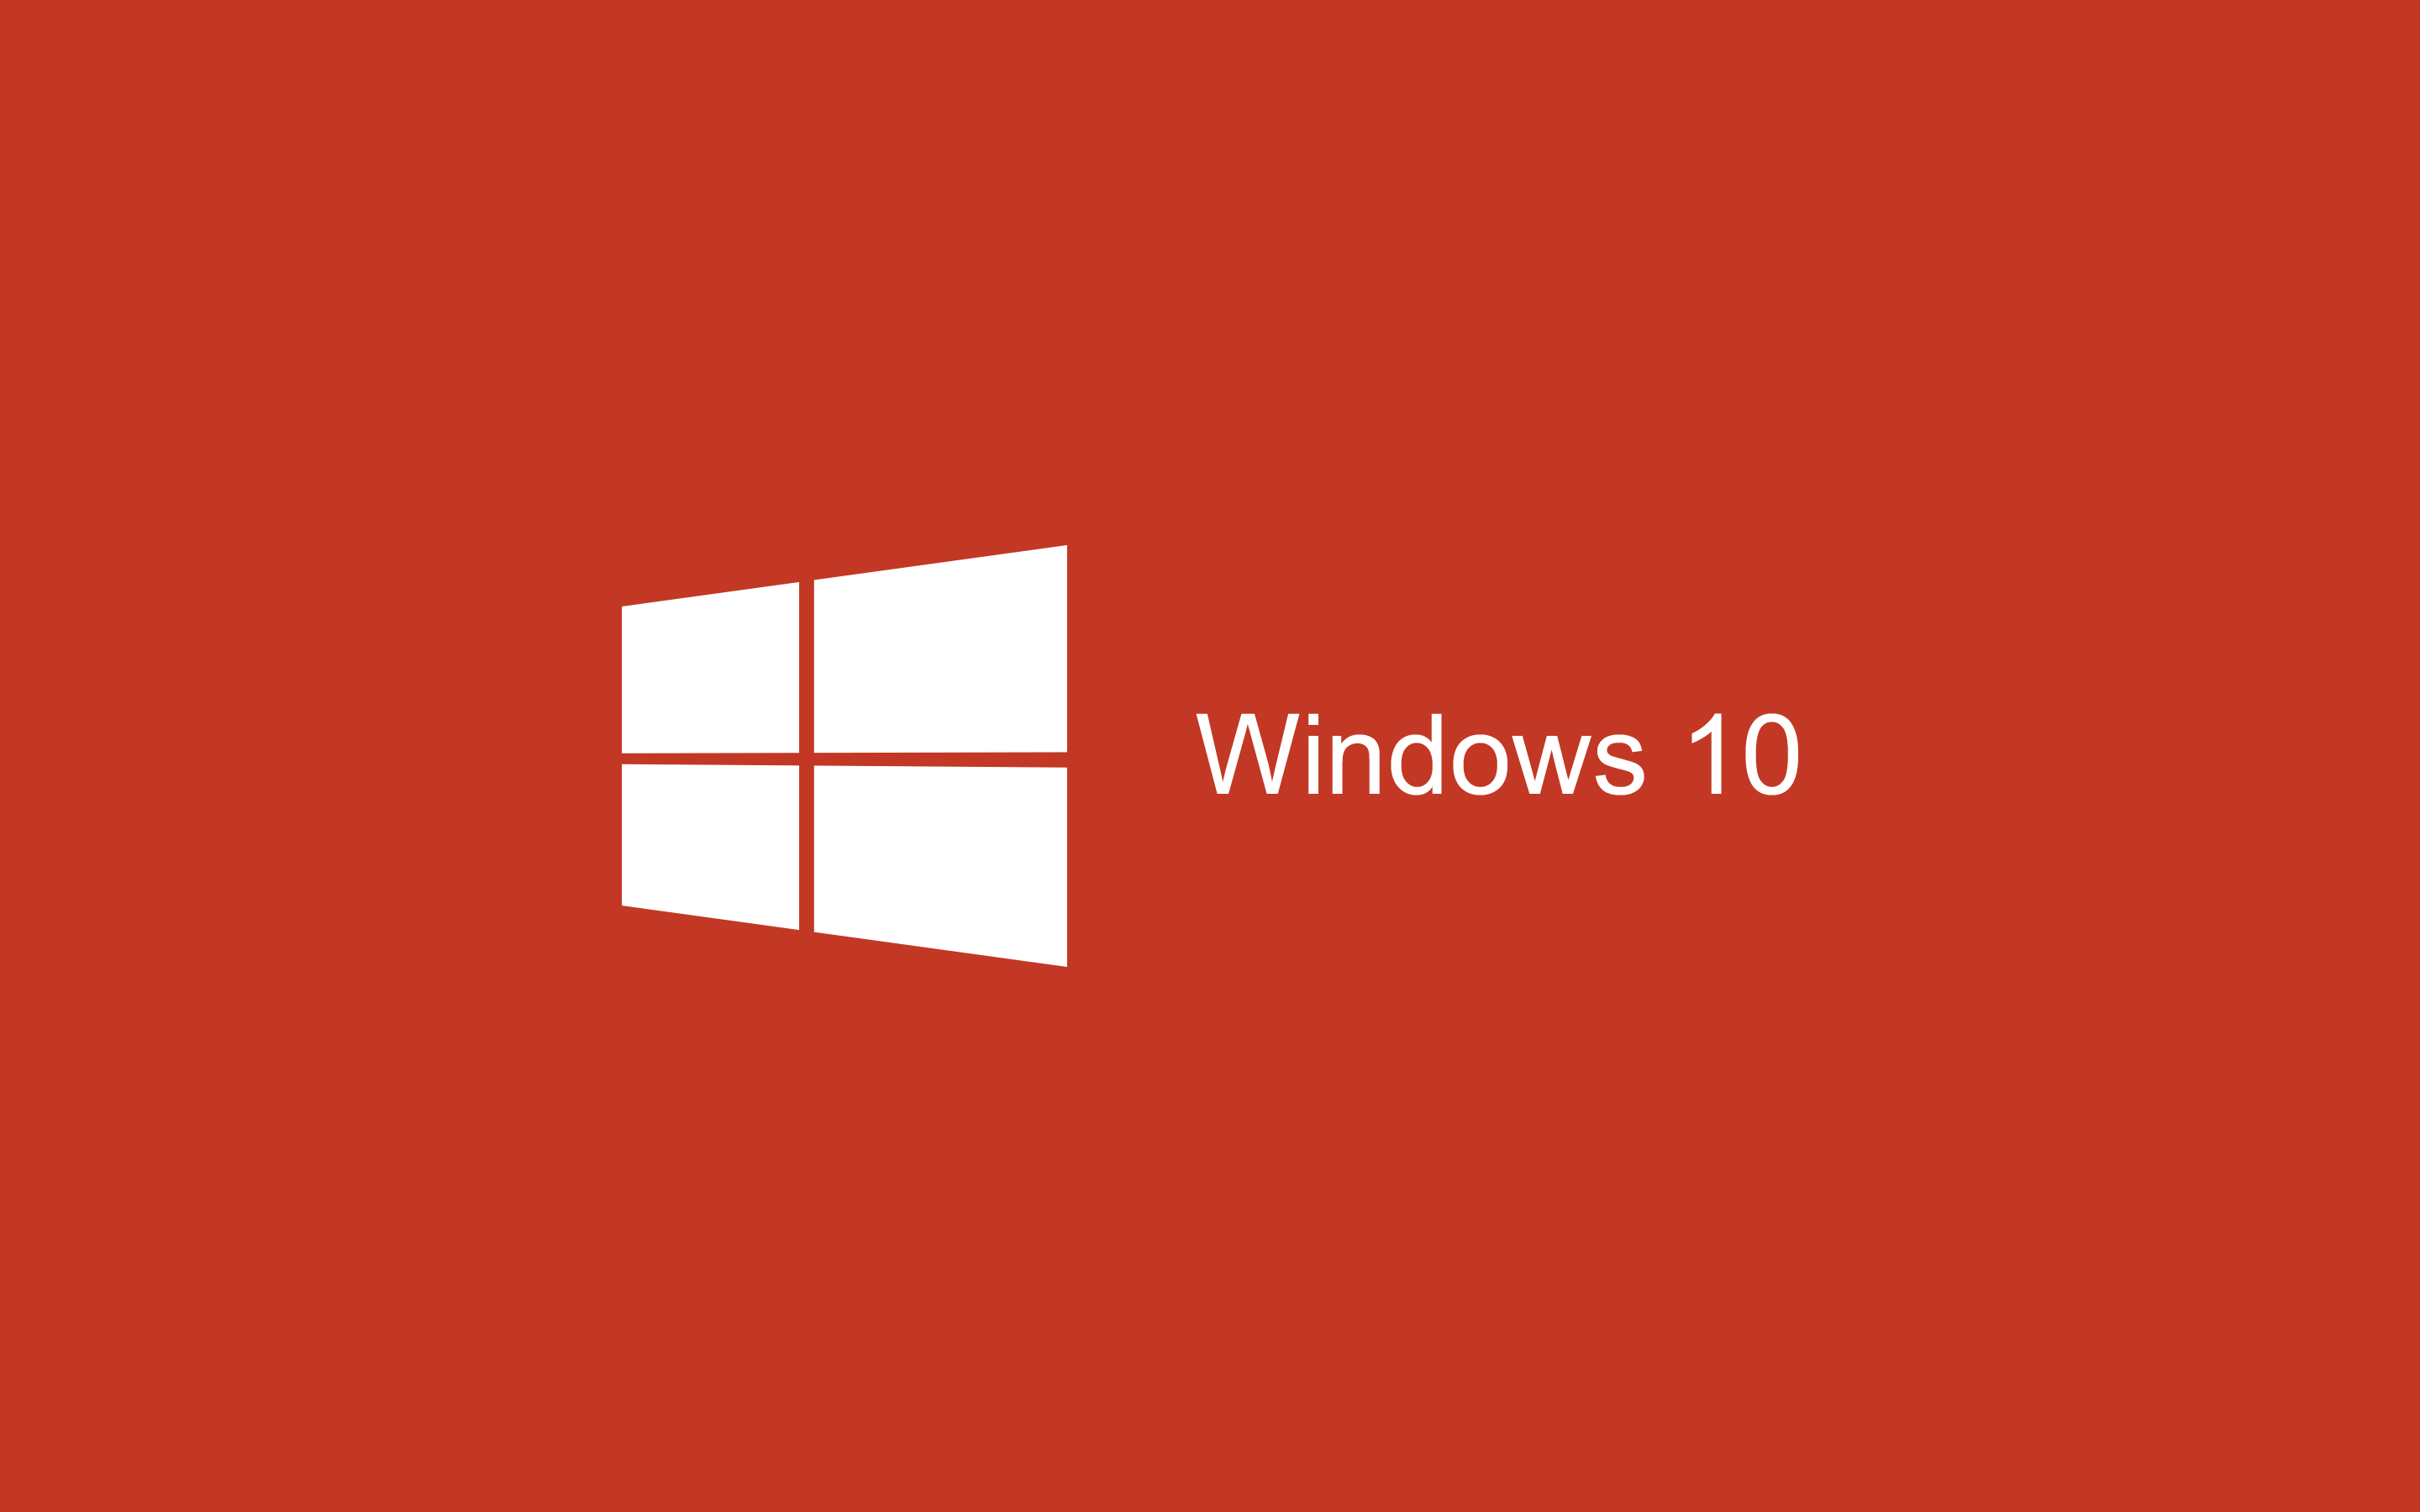 Windows 10 In Red - HD Wallpaper 